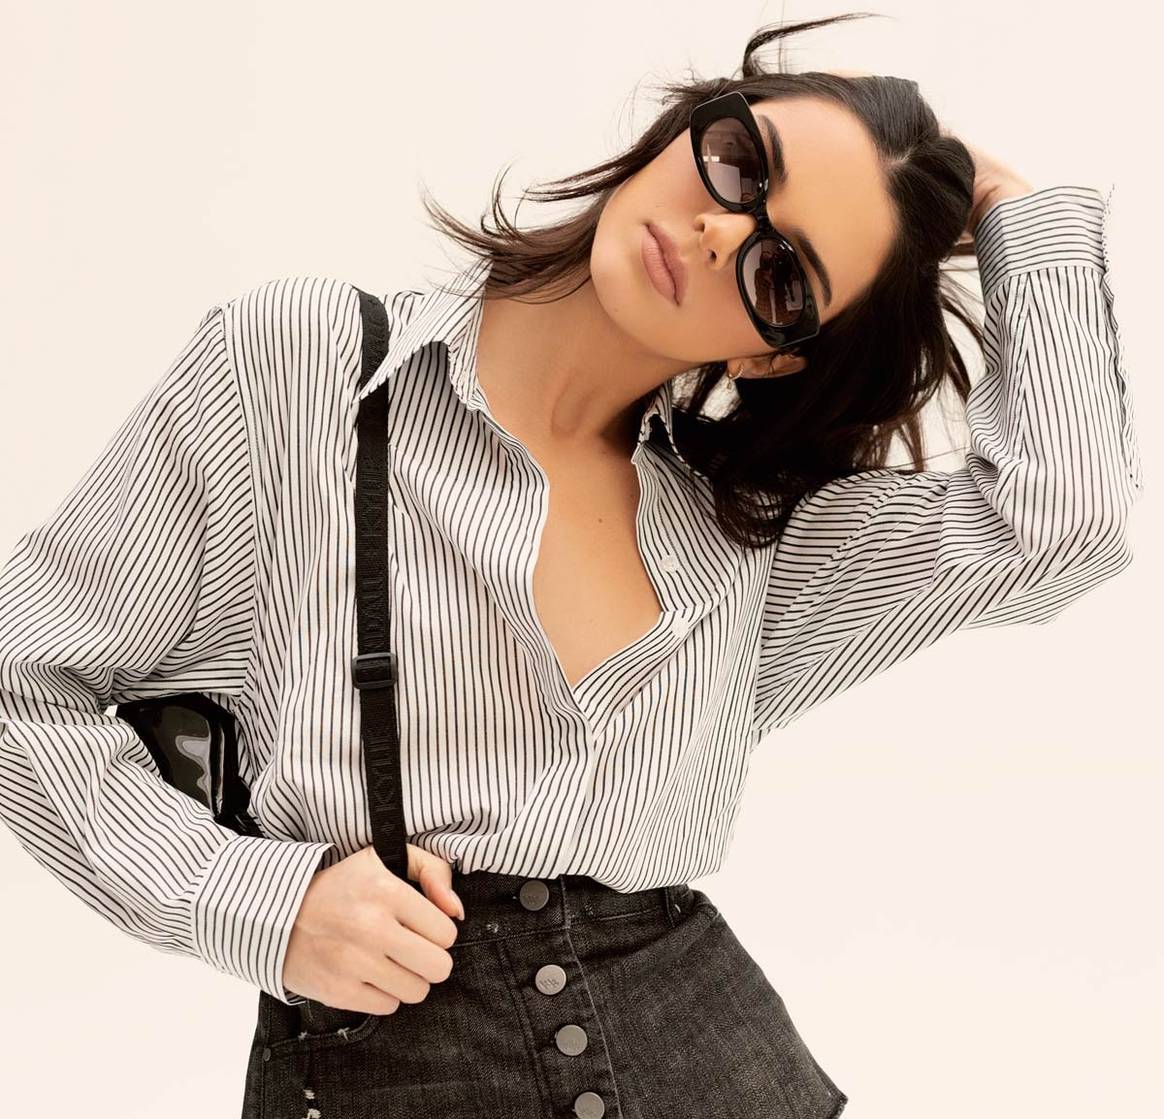 Atol lance une nouvelle collection avec les sœurs Kardashian-Jenner